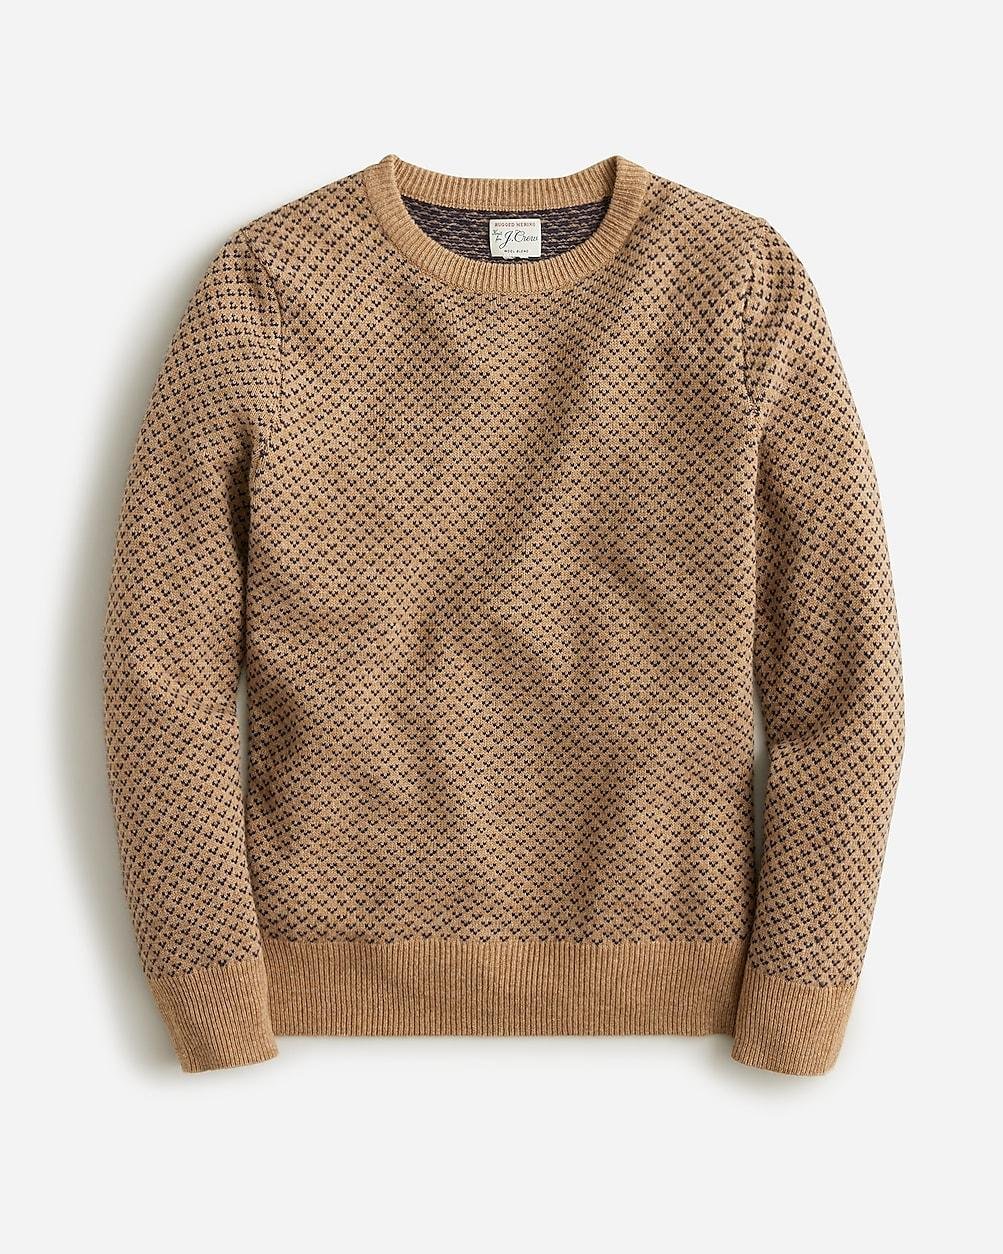 Rugged merino wool-blend bird's-eye sweater by J.CREW